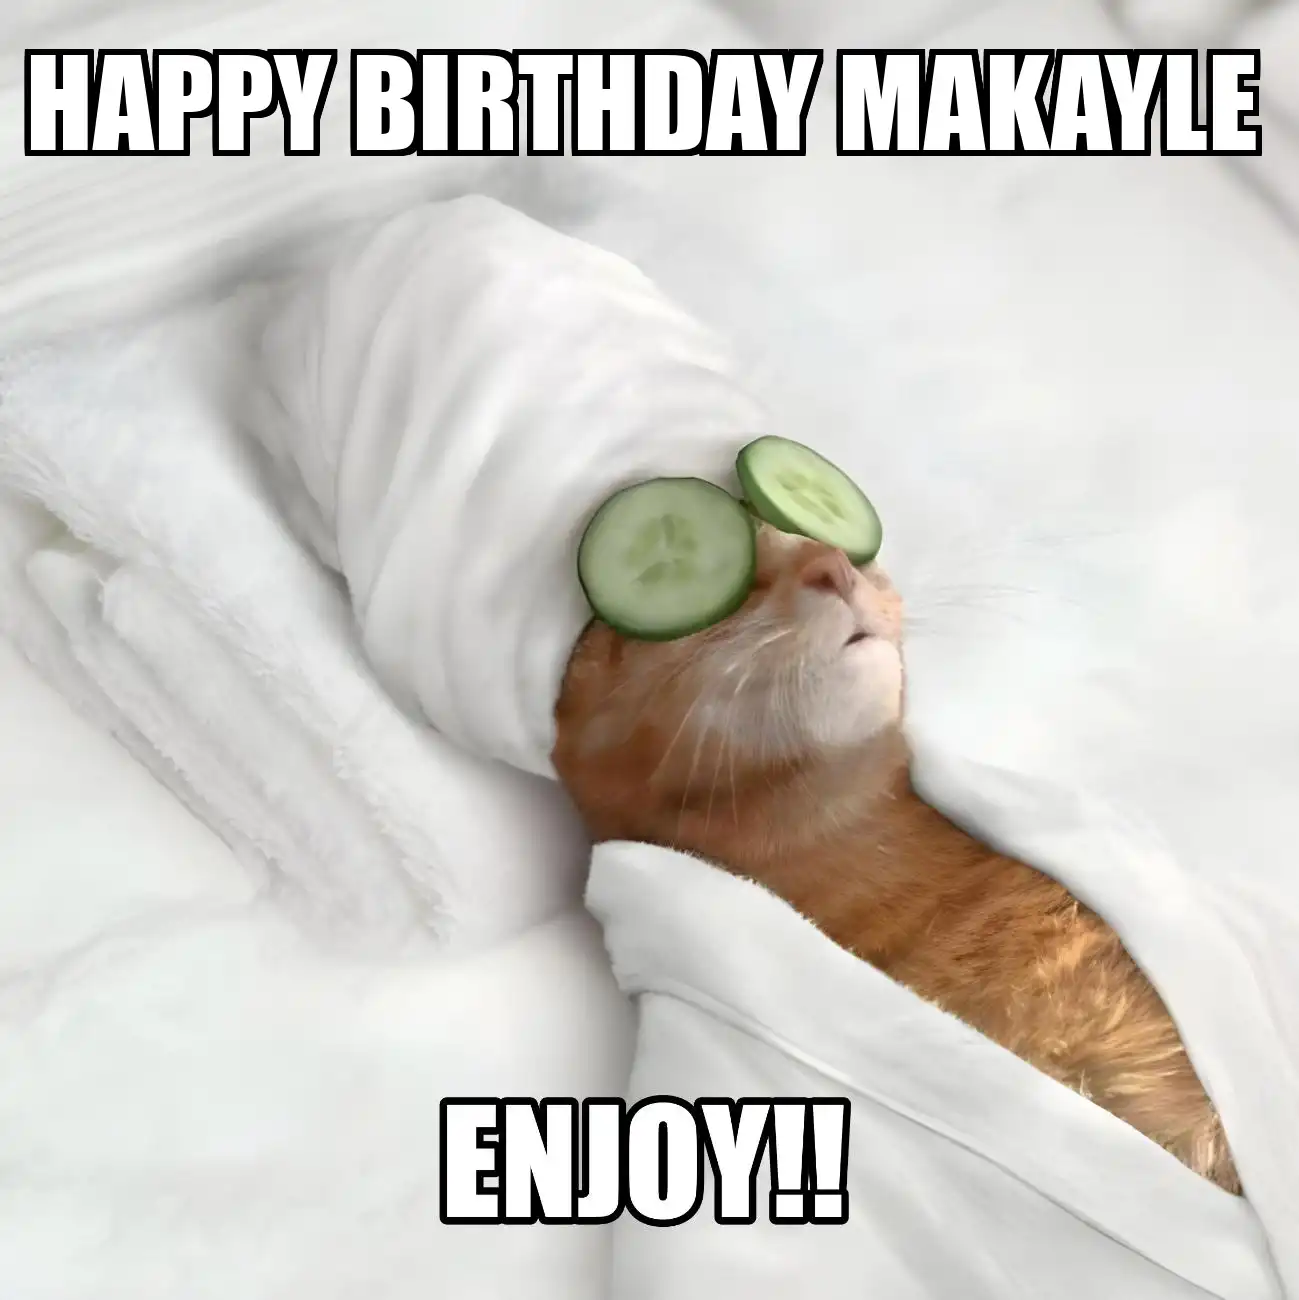 Happy Birthday Makayle Enjoy Cat Meme